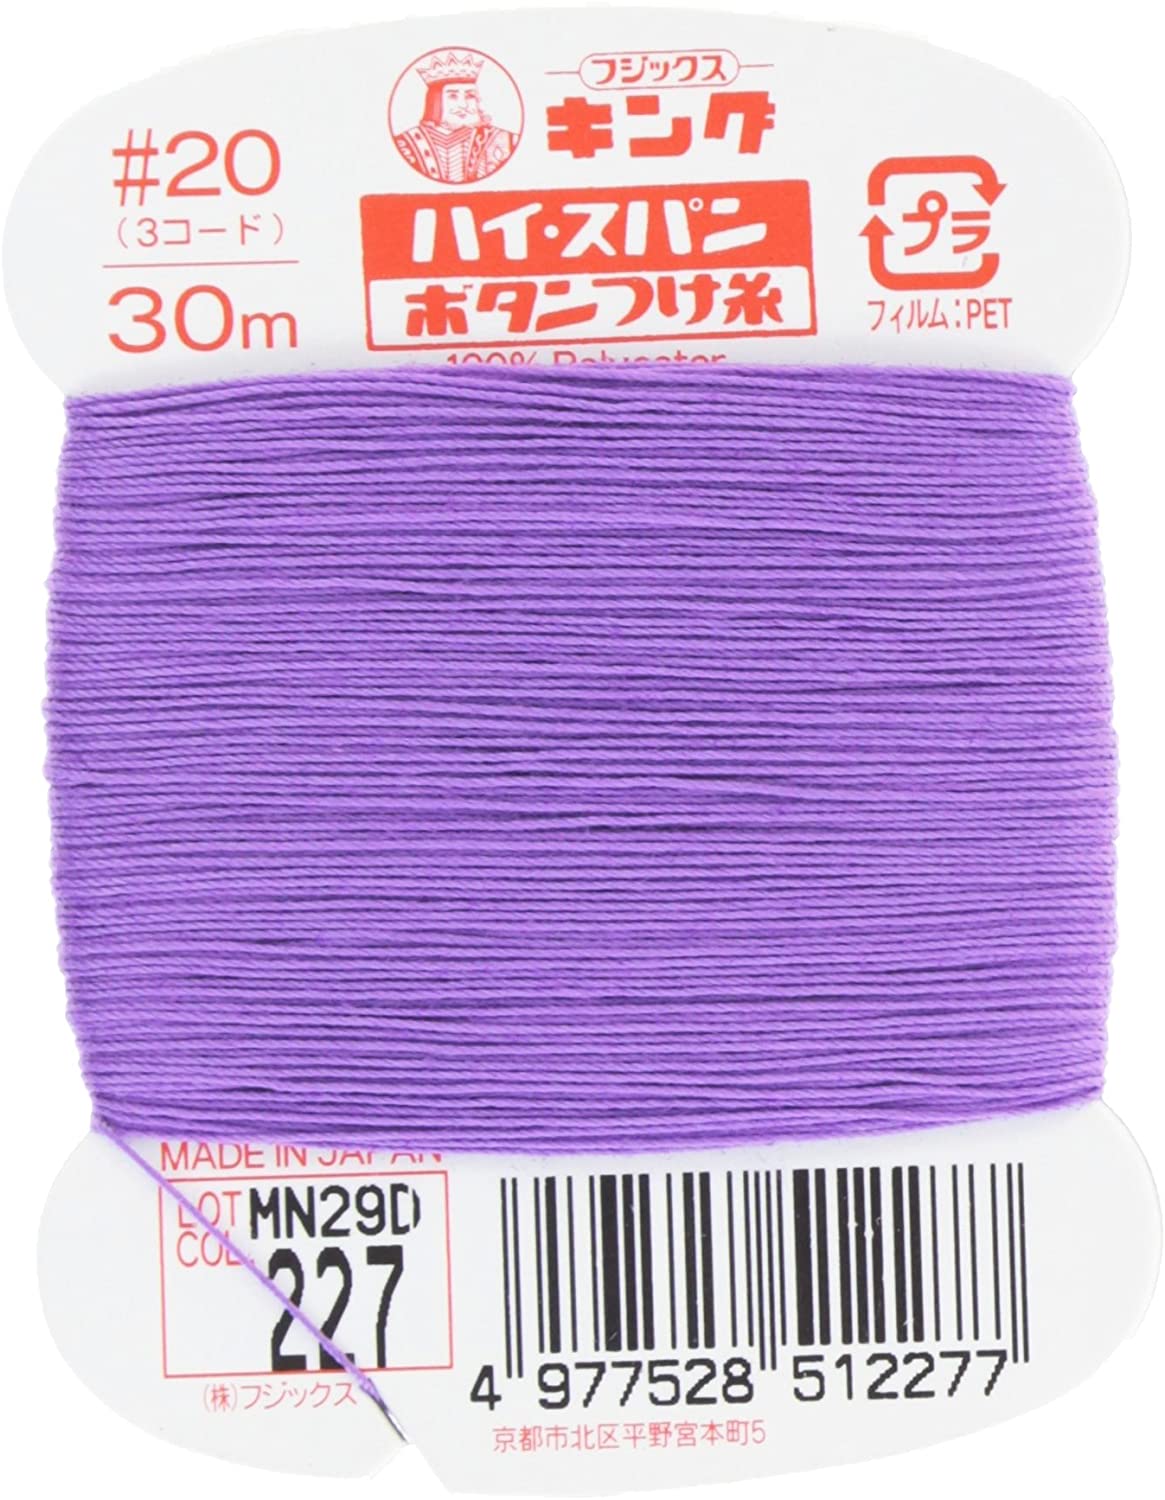 FK51-227 ハイスパンボタンつけ糸 #20 30m巻 (枚)